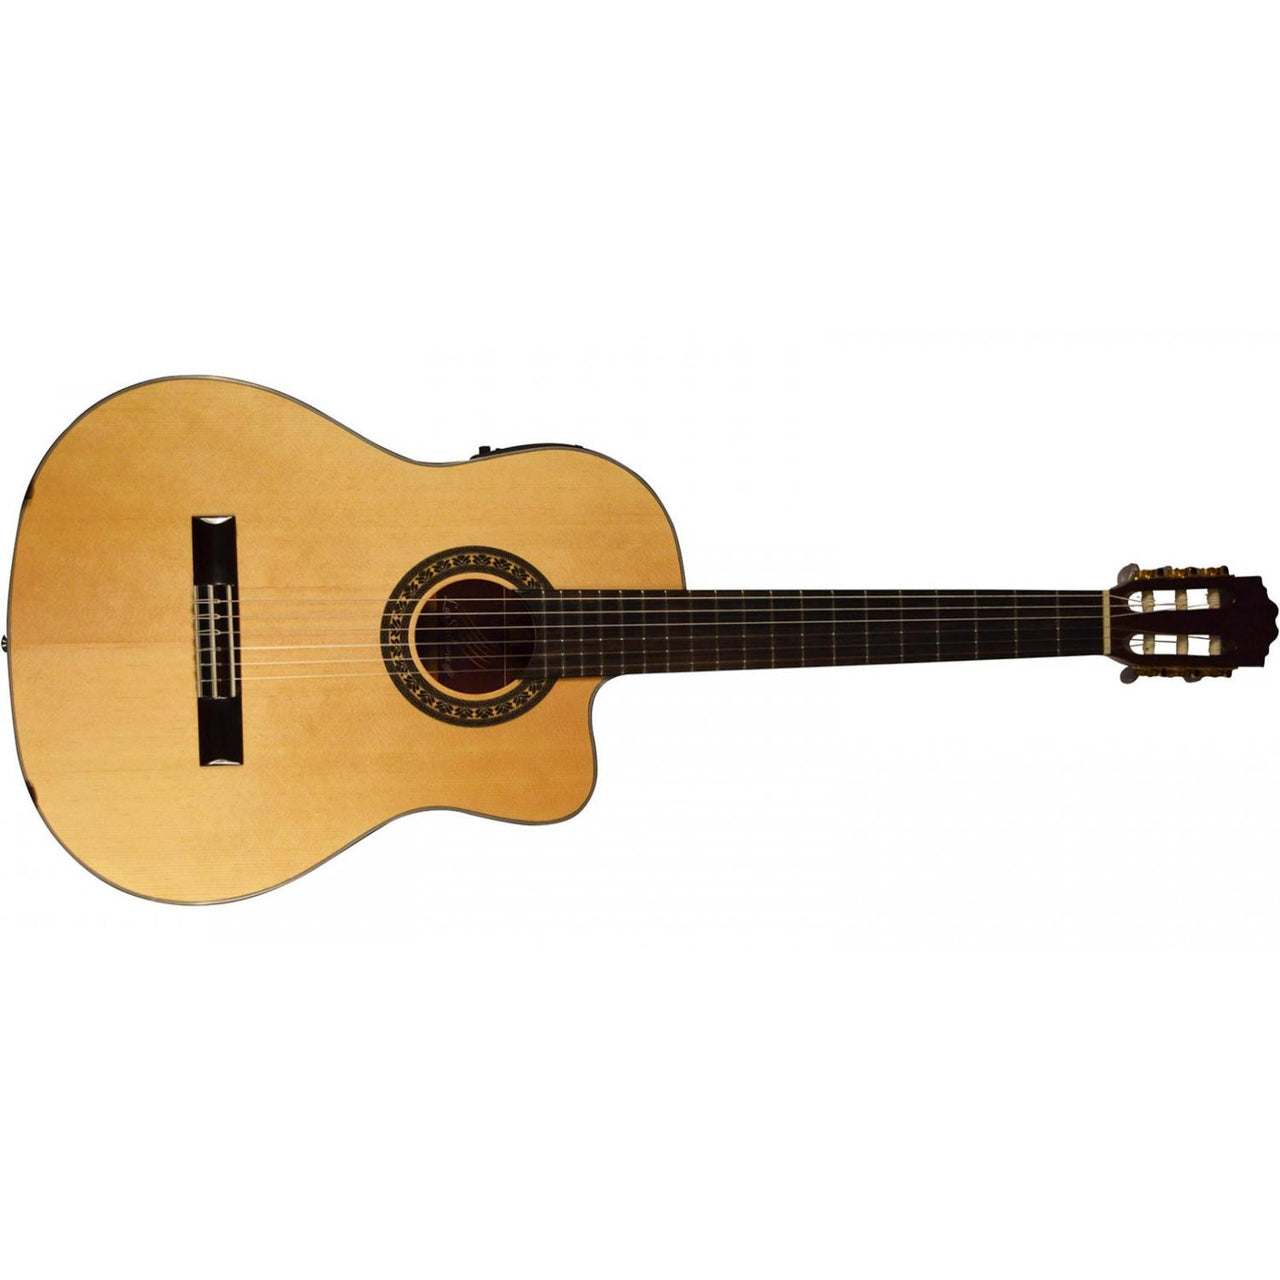 Guitarra Electroacustica La Sevillana, N-6ceq